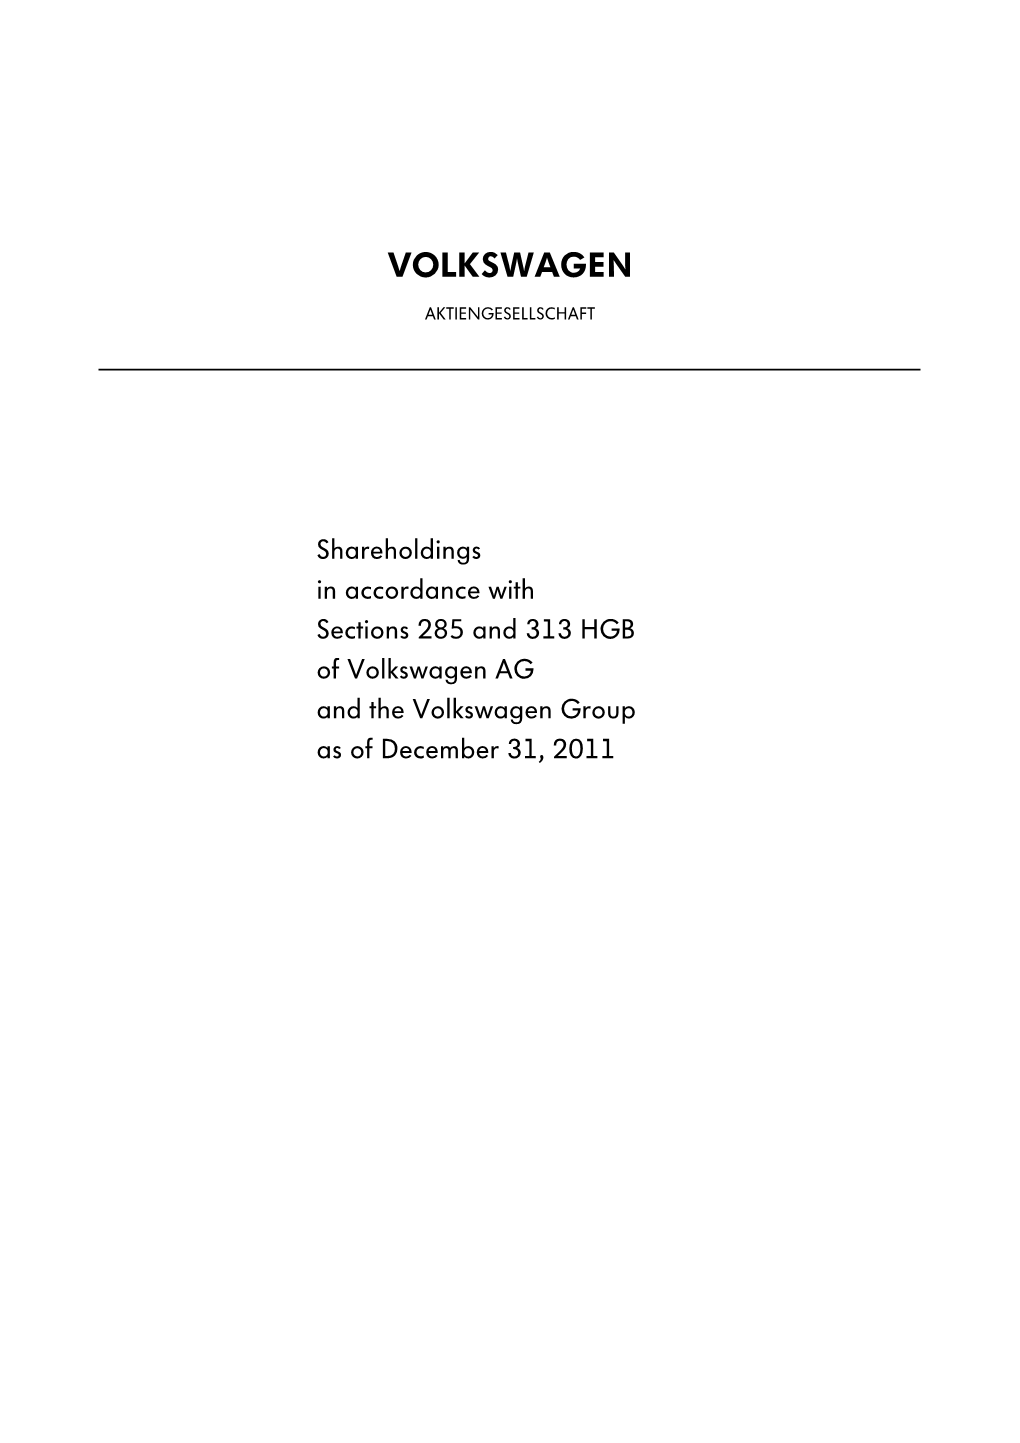 Anteilsbesitz VW AG 31.12.2011 Englisch